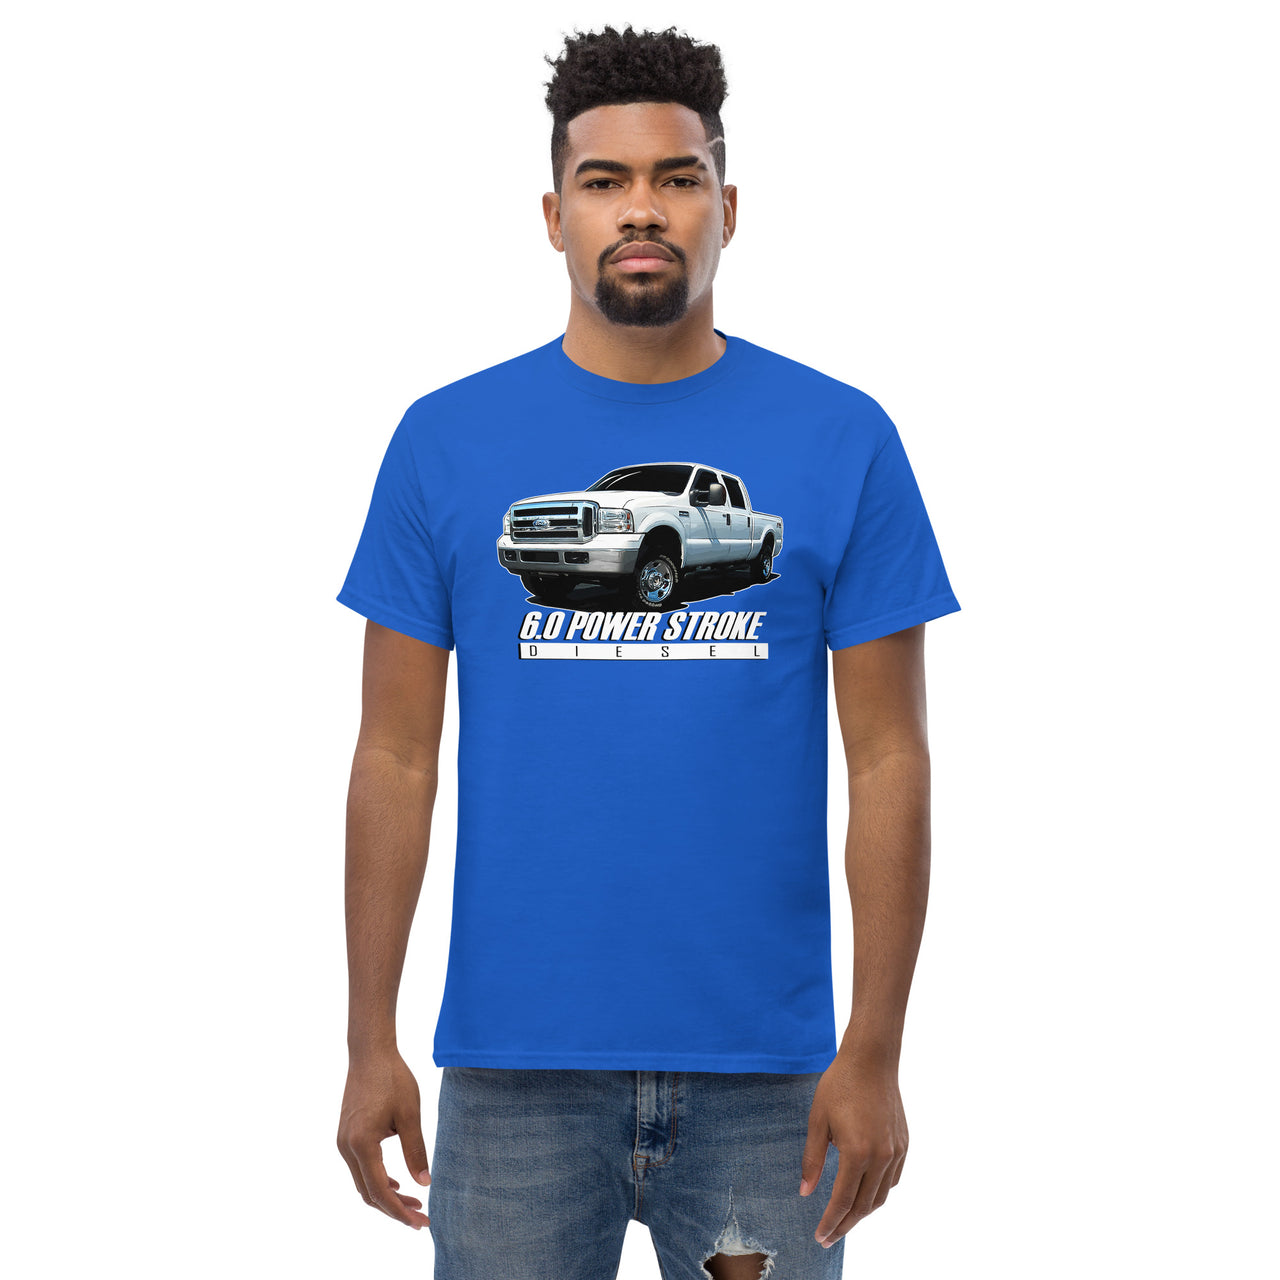 6.0 Power Stroke Diesel T-Shirt modeled in blue